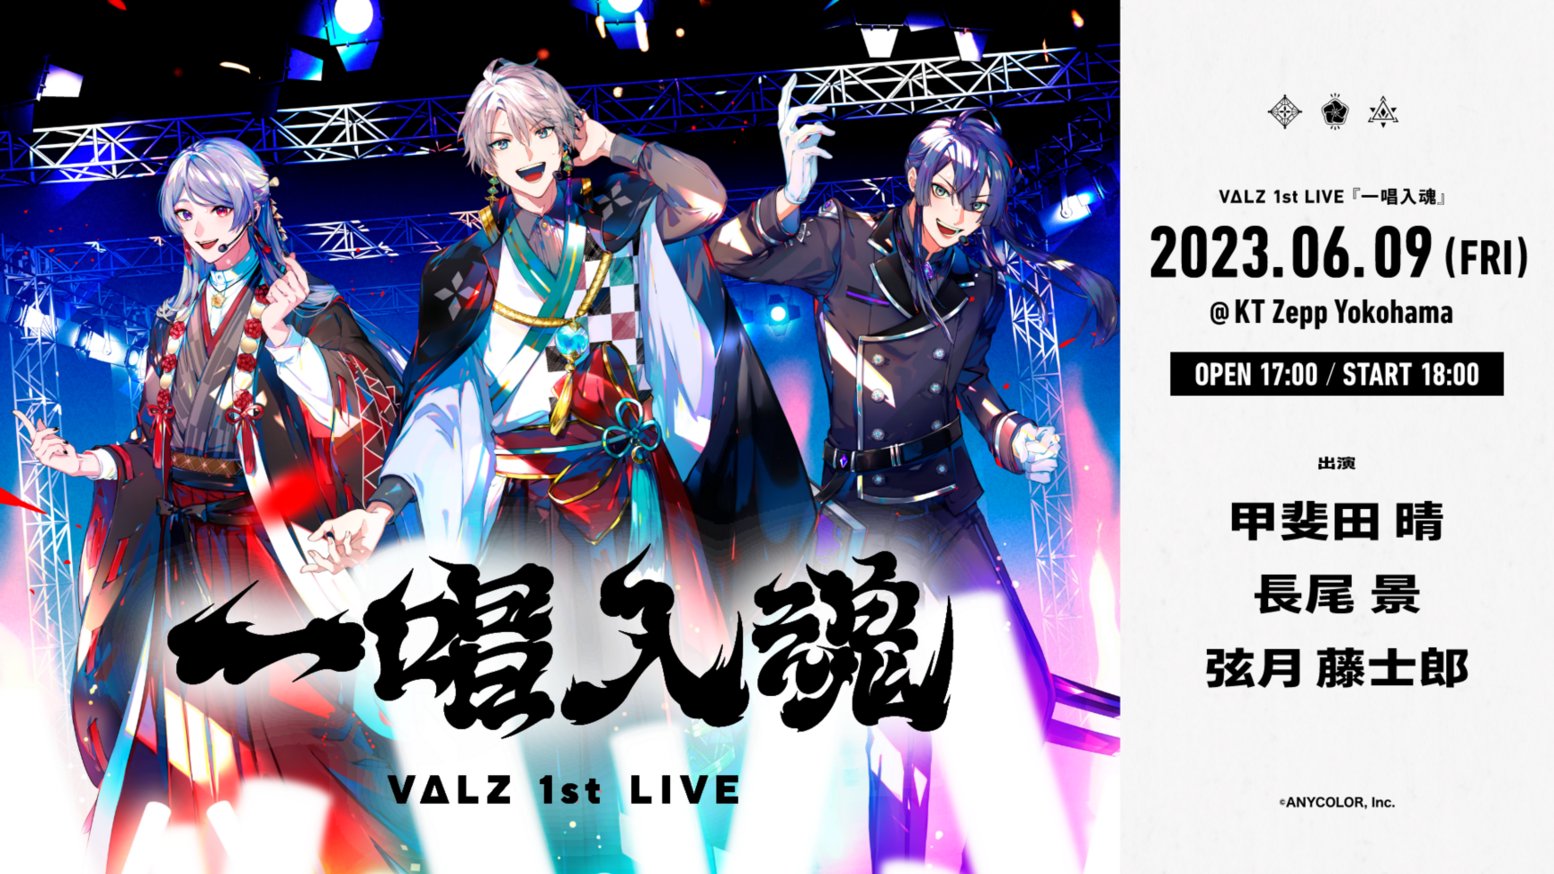 【FC先行チケット受付開始】VΔLZ 1st LIVE『一唱入魂』